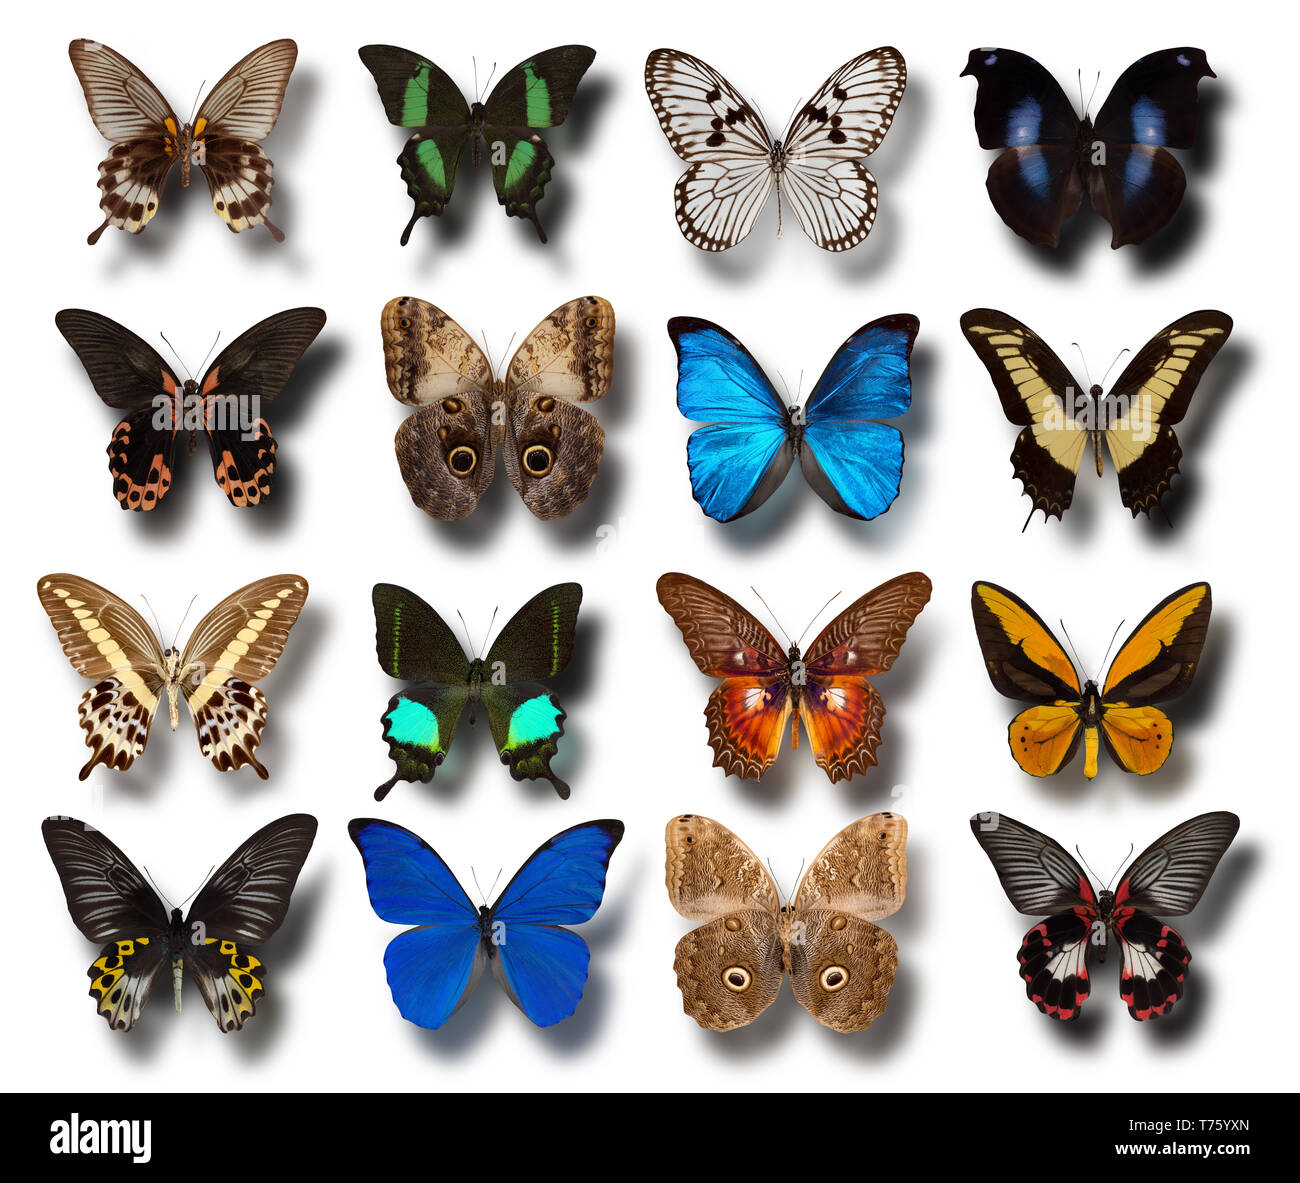 Sammlung verschiedener Schmetterlinge auf einem weißen Hintergrund. Stockfoto